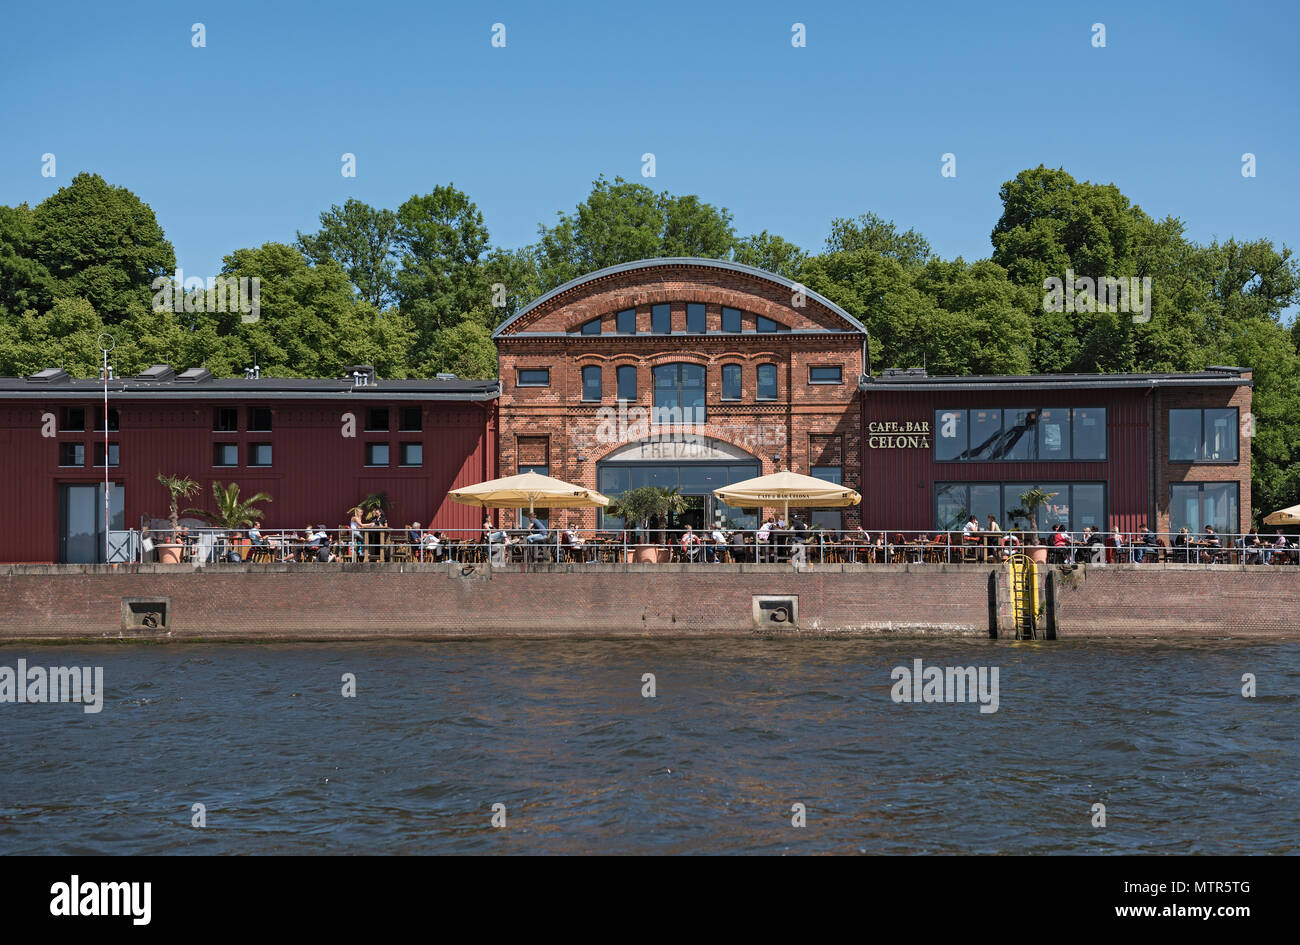 Cafe mit Gästen am Ufer der Trave in Lübeck, Deutschland Stockfoto